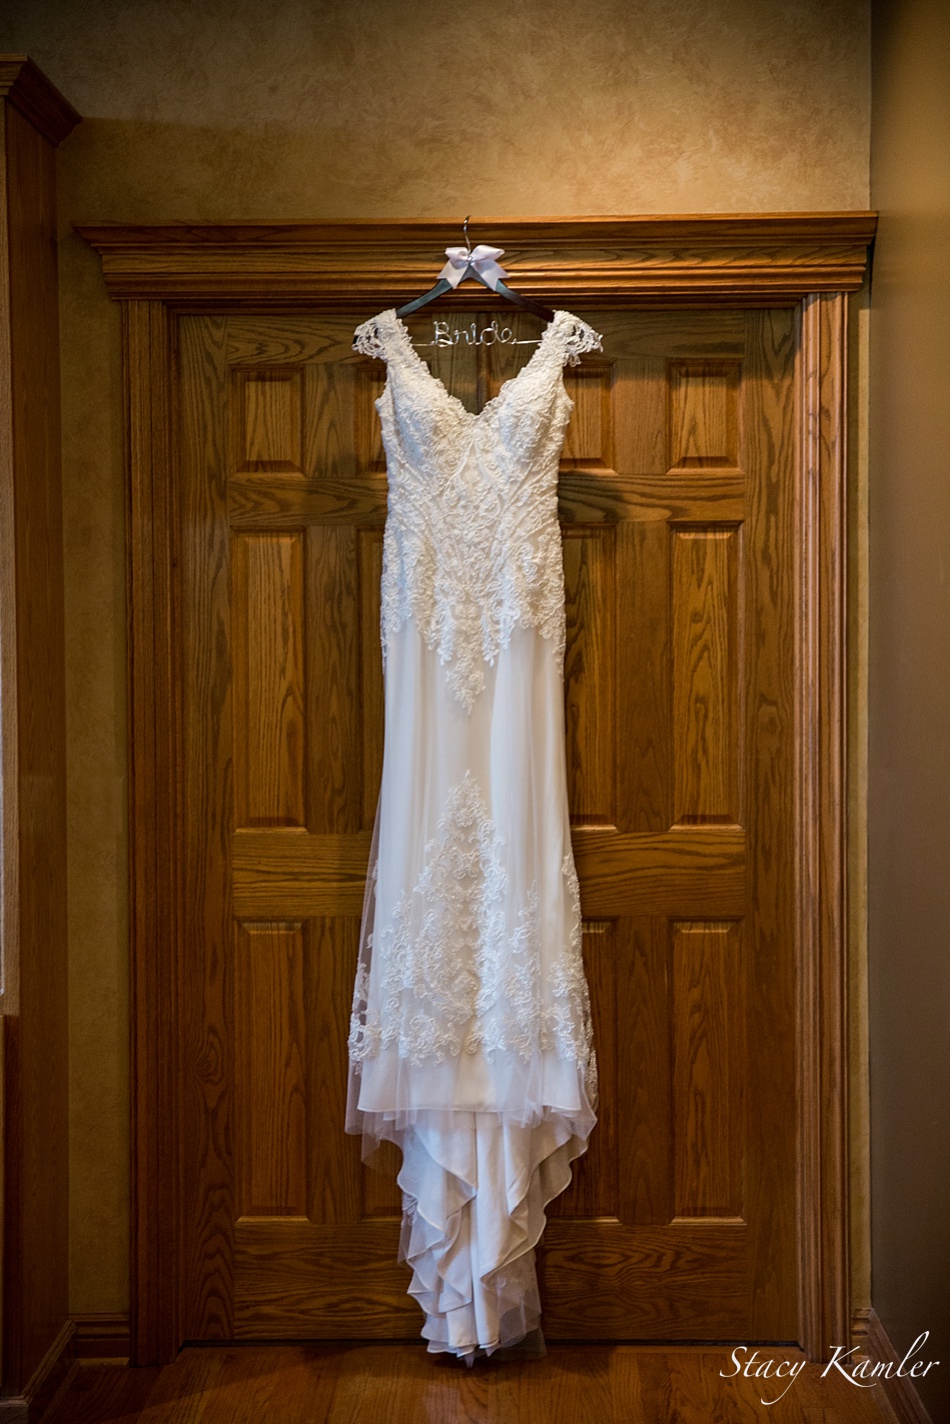 Dress hanging by door